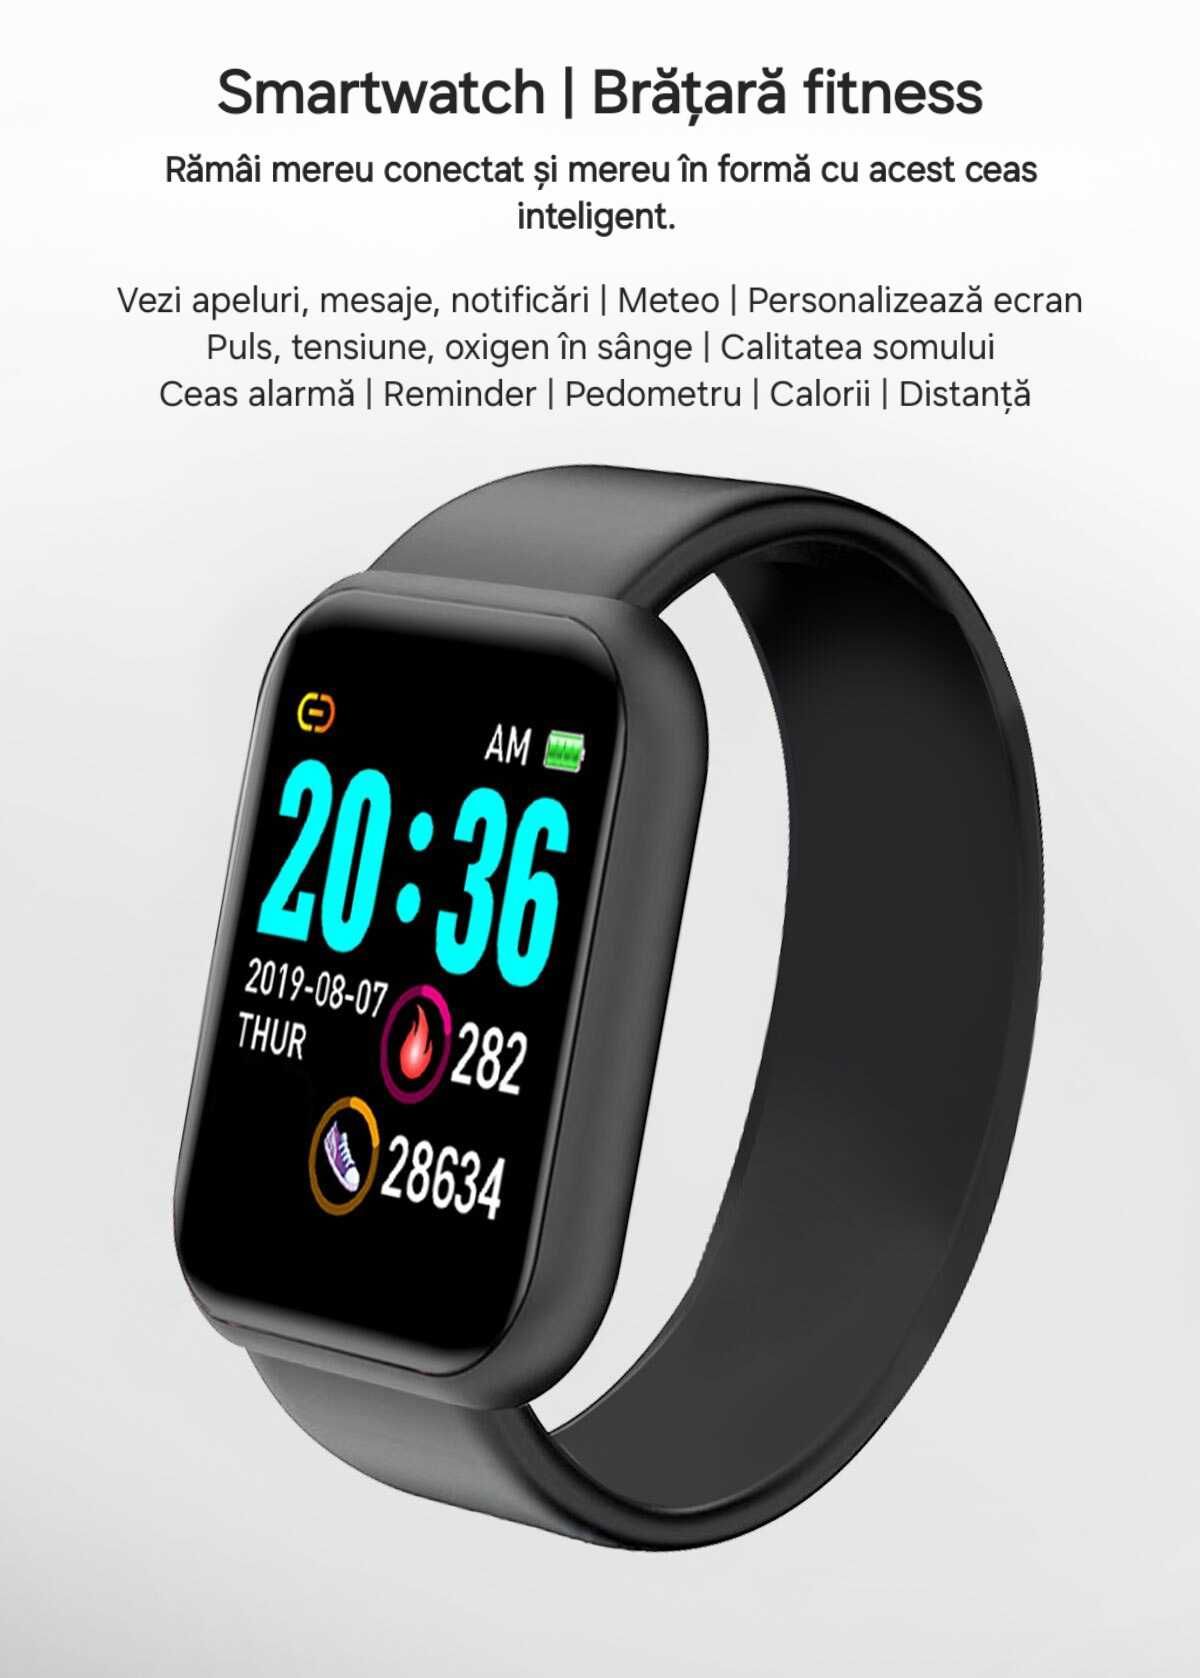 Smartwatch toate funcțiile: vezi apel+mesaje. Sport. Sănătate. Negru